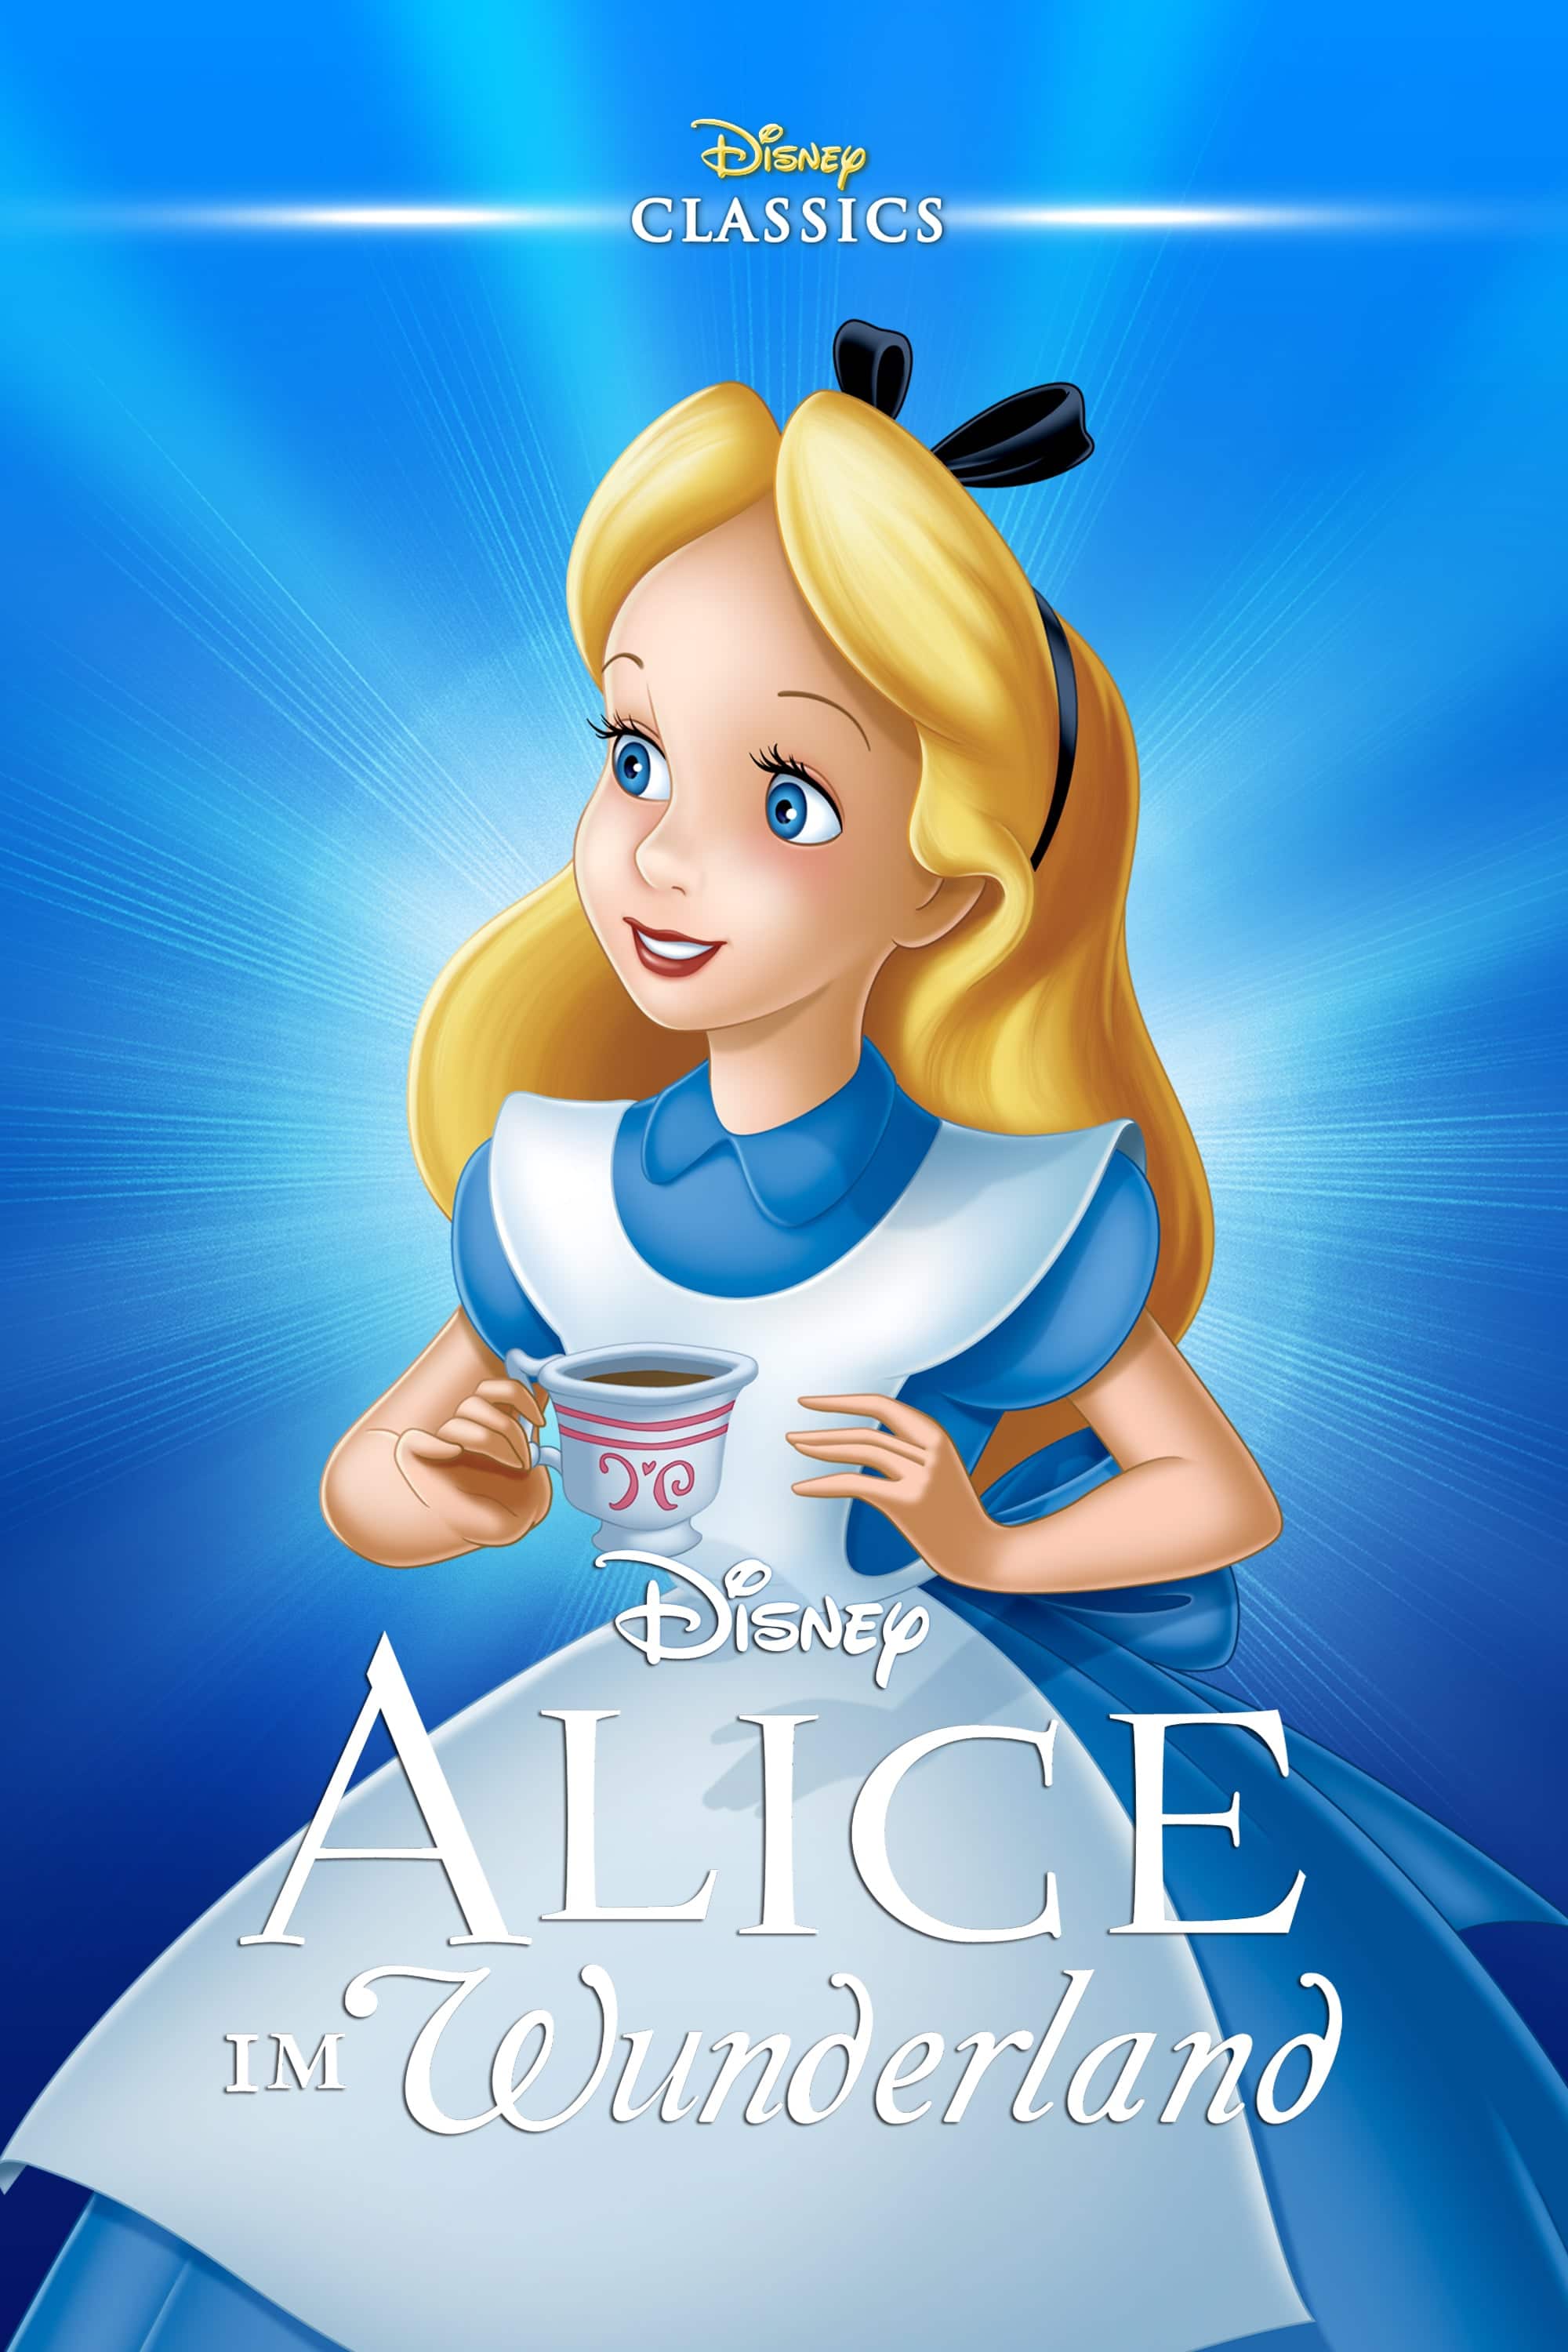 Plakat von "Alice im Wunderland"